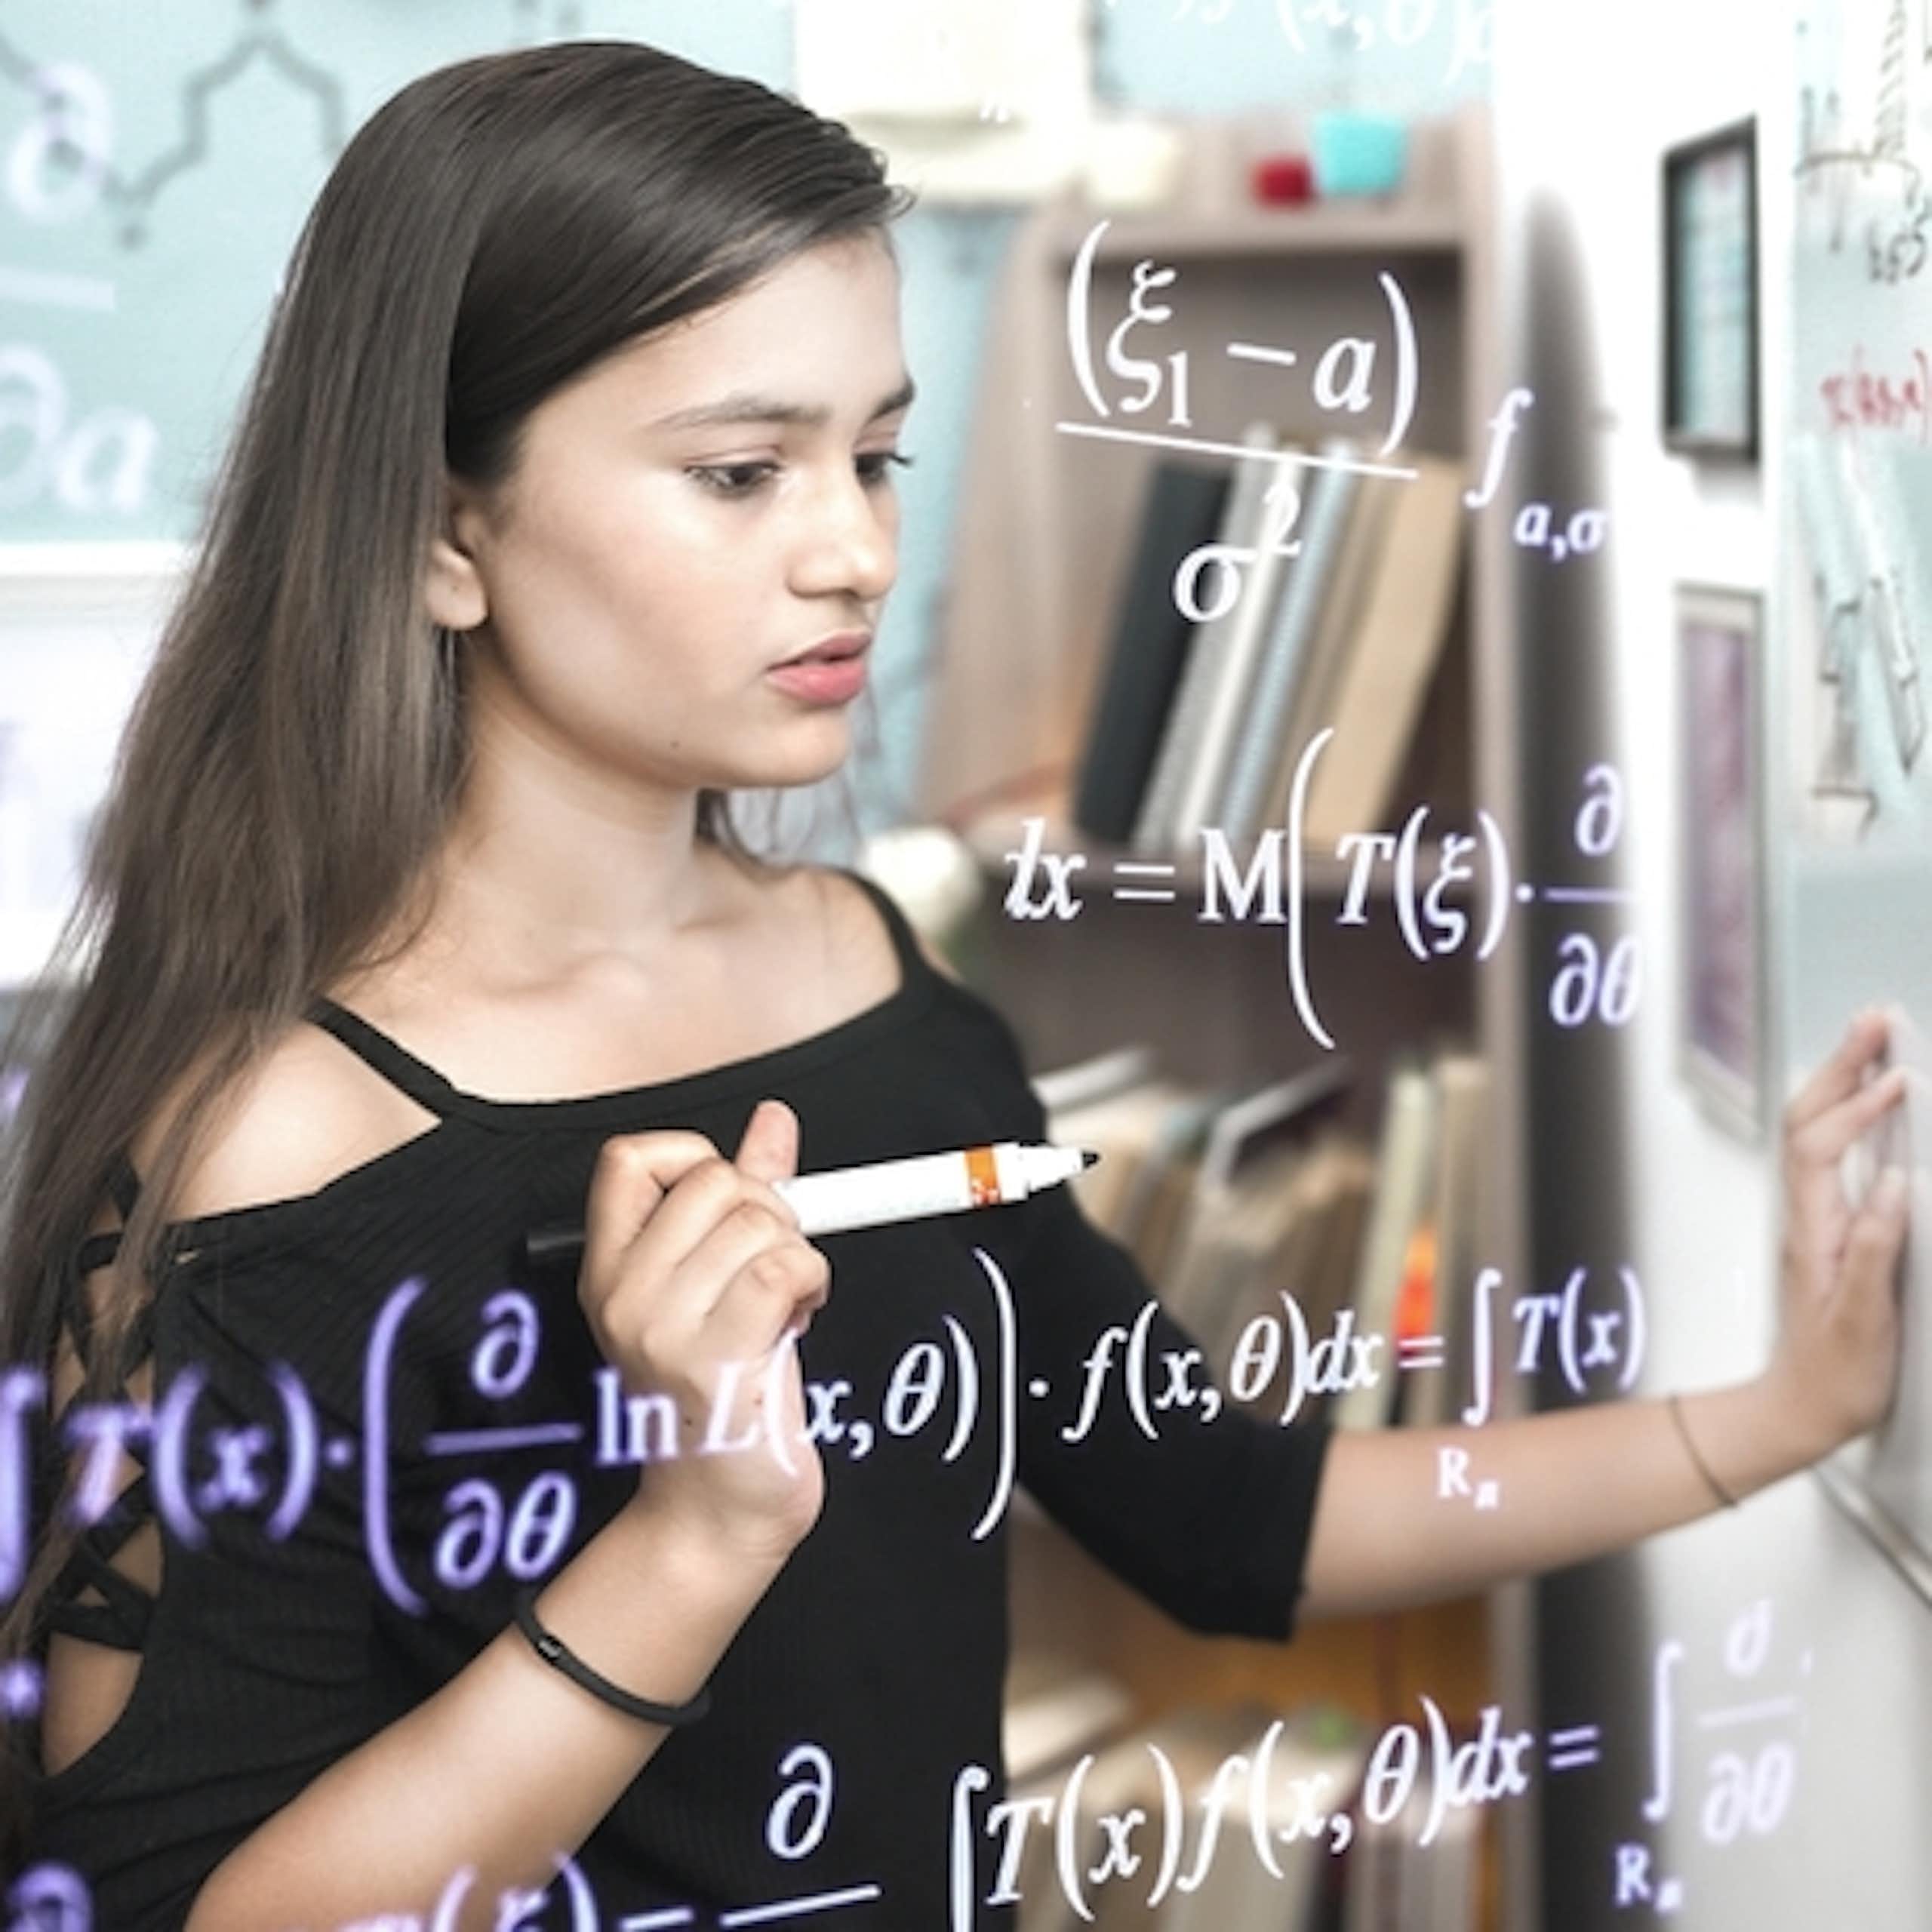 Comment la réforme du lycée éloigne les filles des maths et des sciences